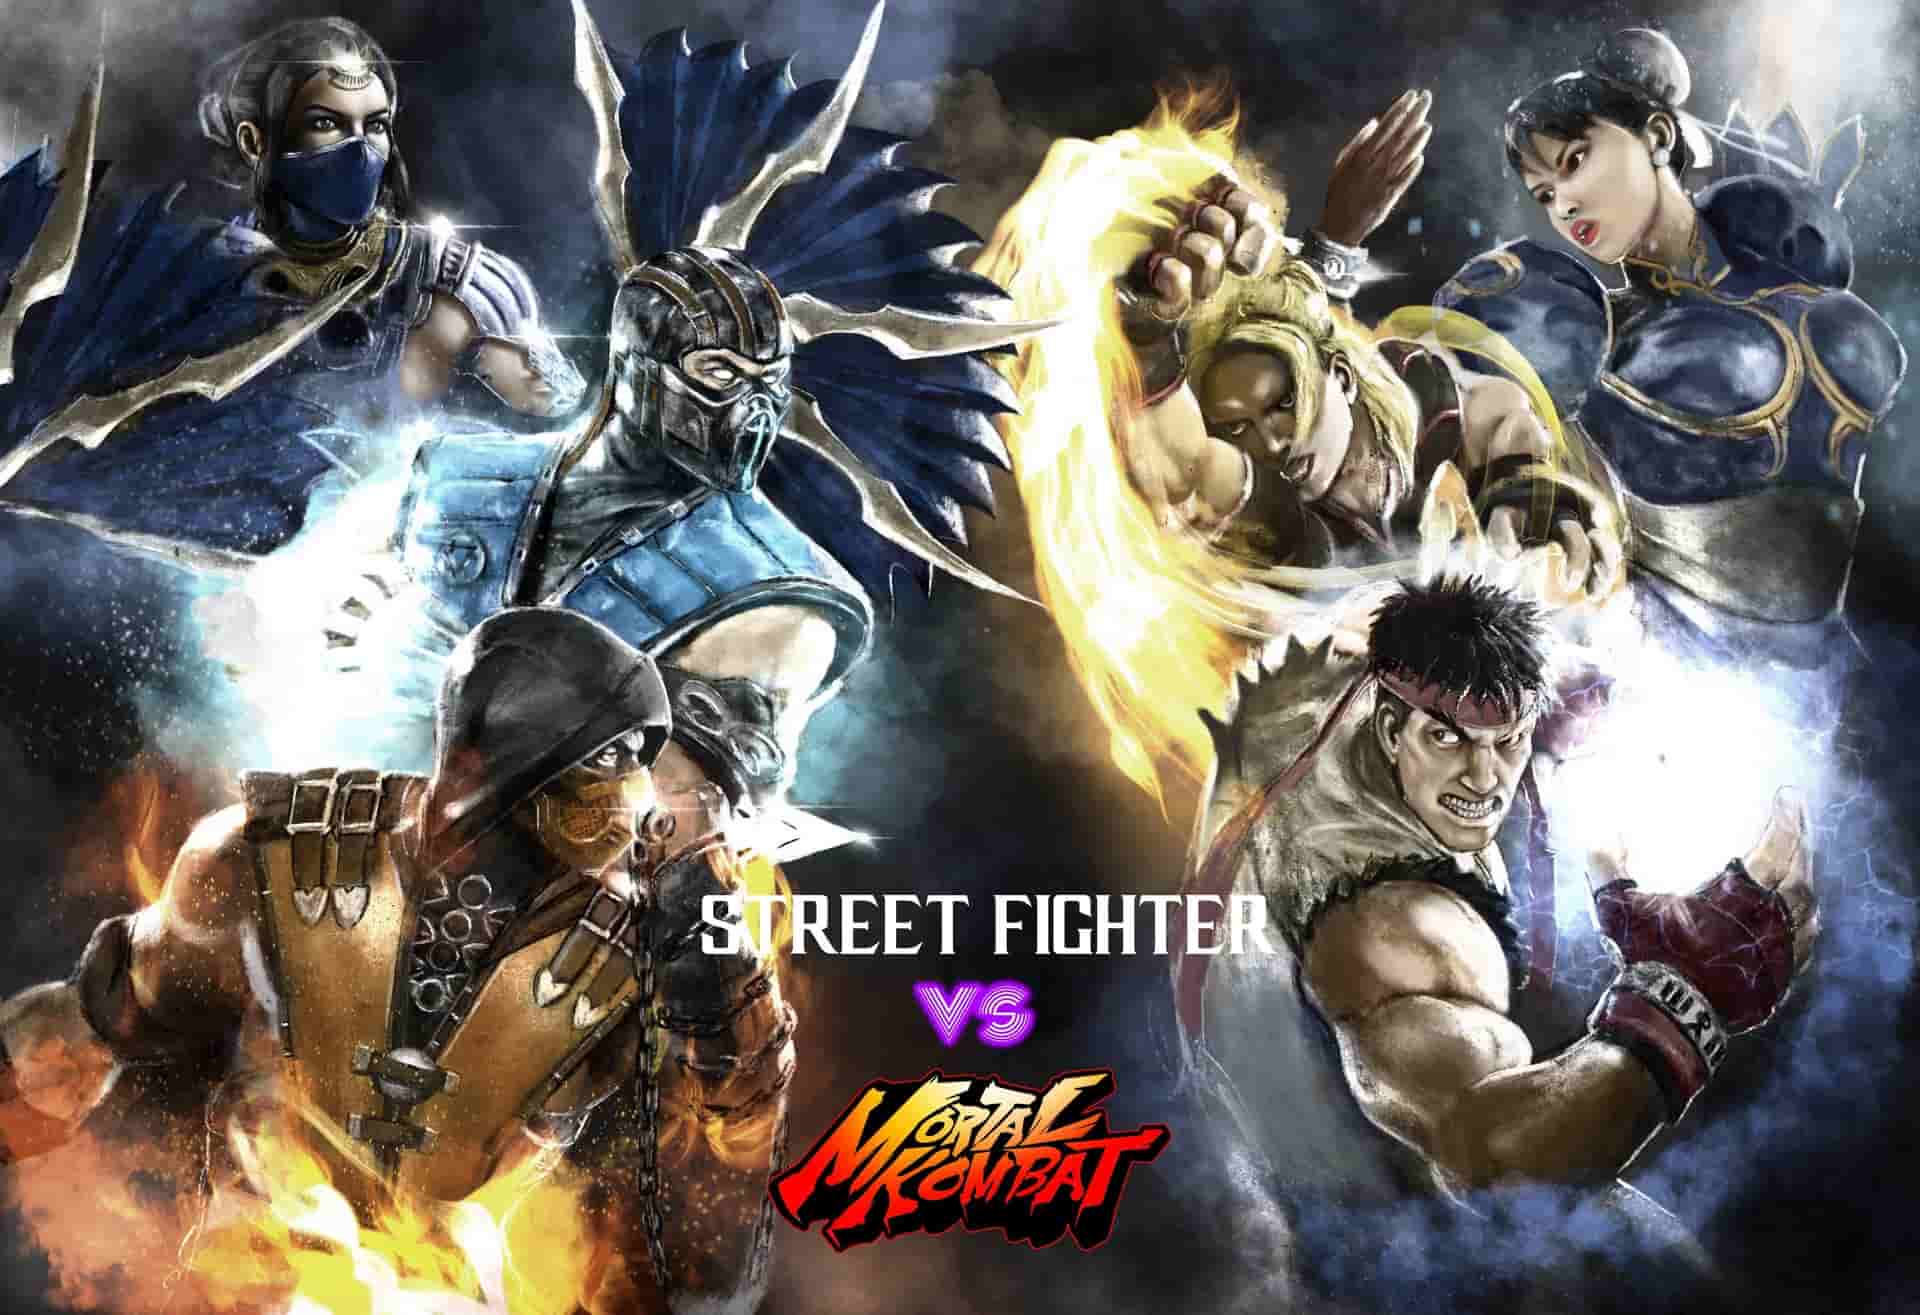 Street fighter vs Mortal Kombat